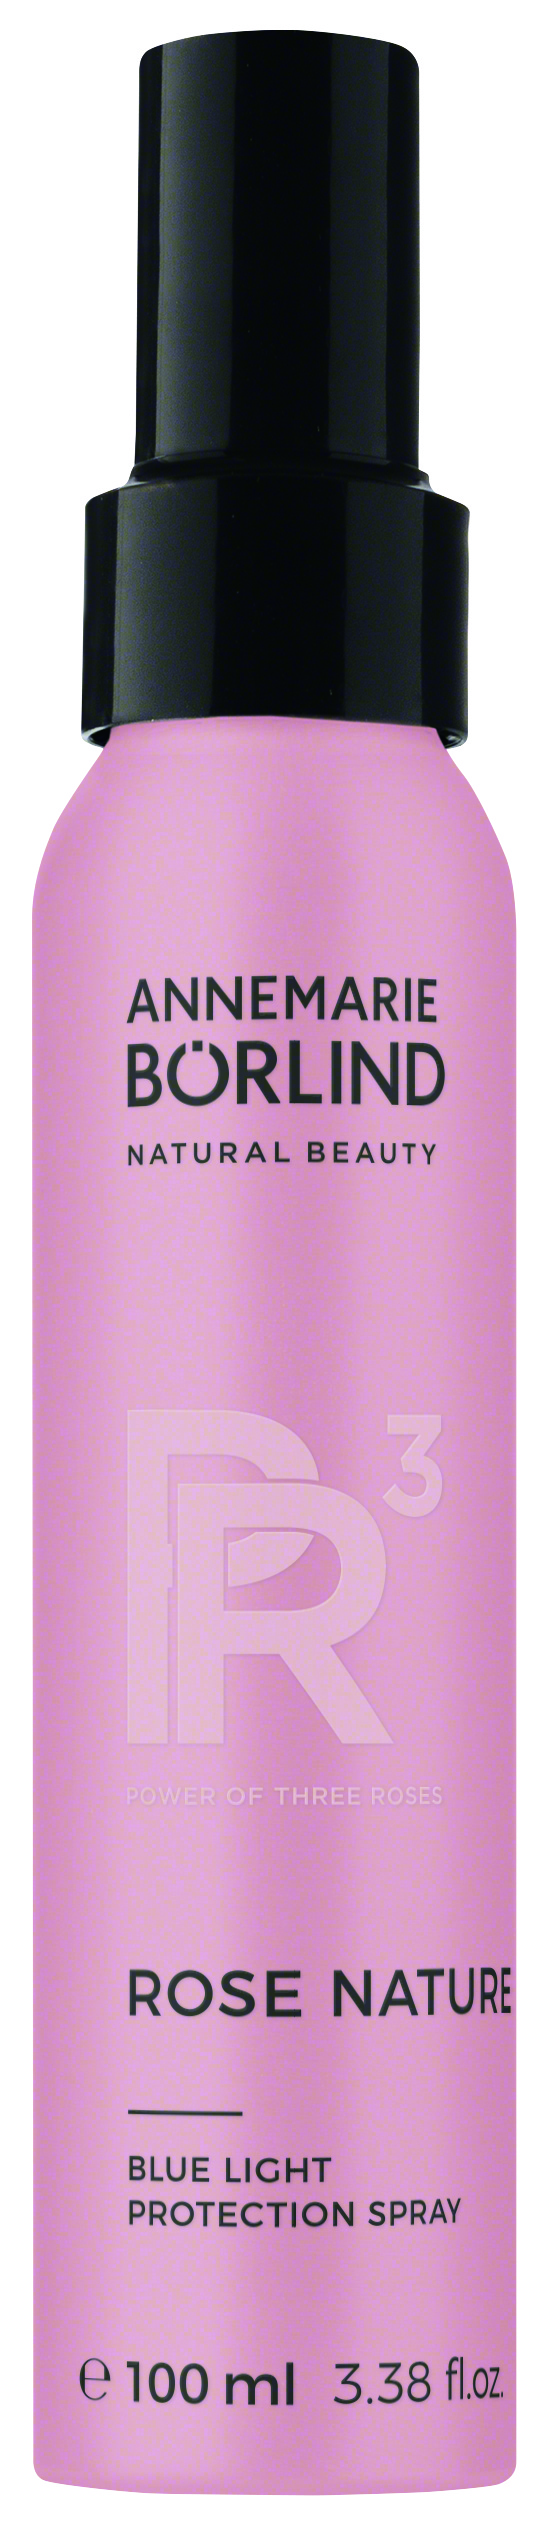 Annemarie Börlind natural beauty